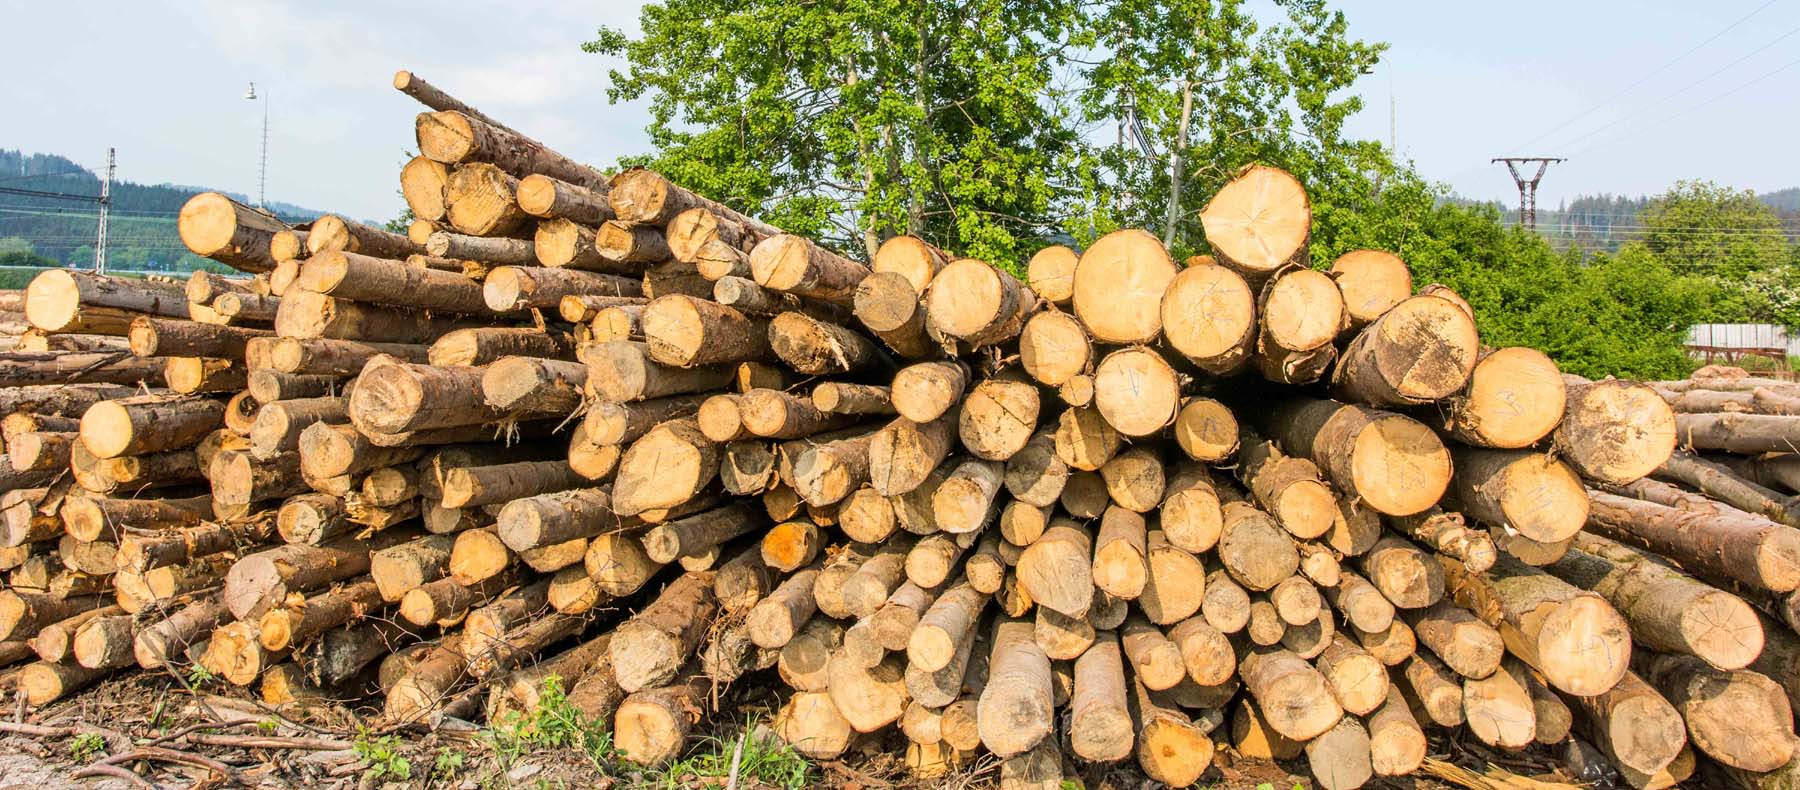 Obchod se dřevem